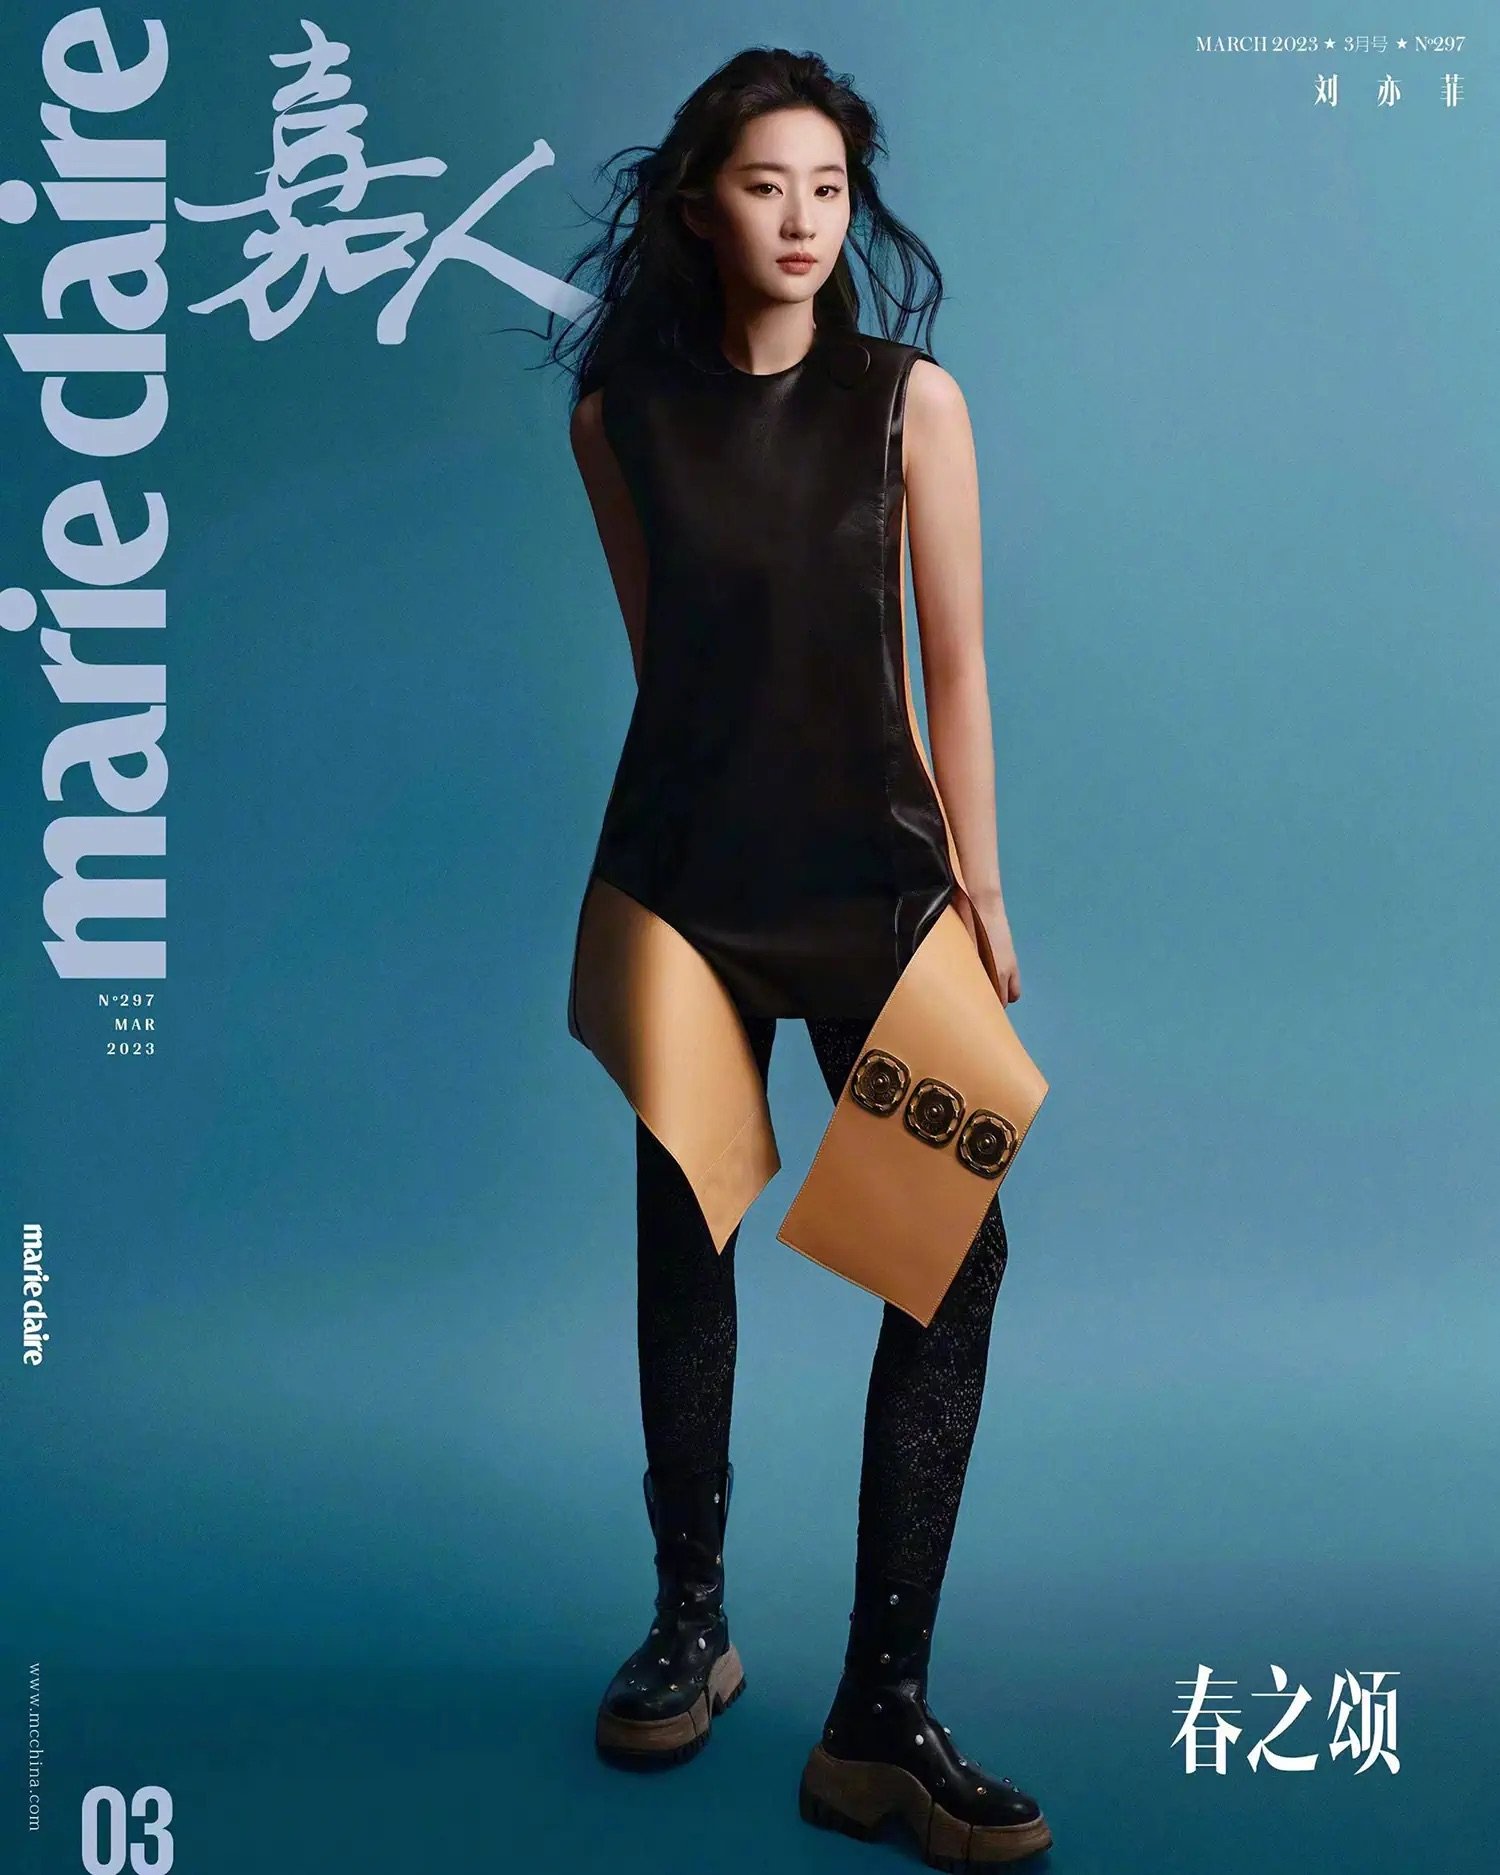 Liu-Yifei-covers-Marie-Claire-China-March-2023-by-Ziqian-Wang-2.jpeg